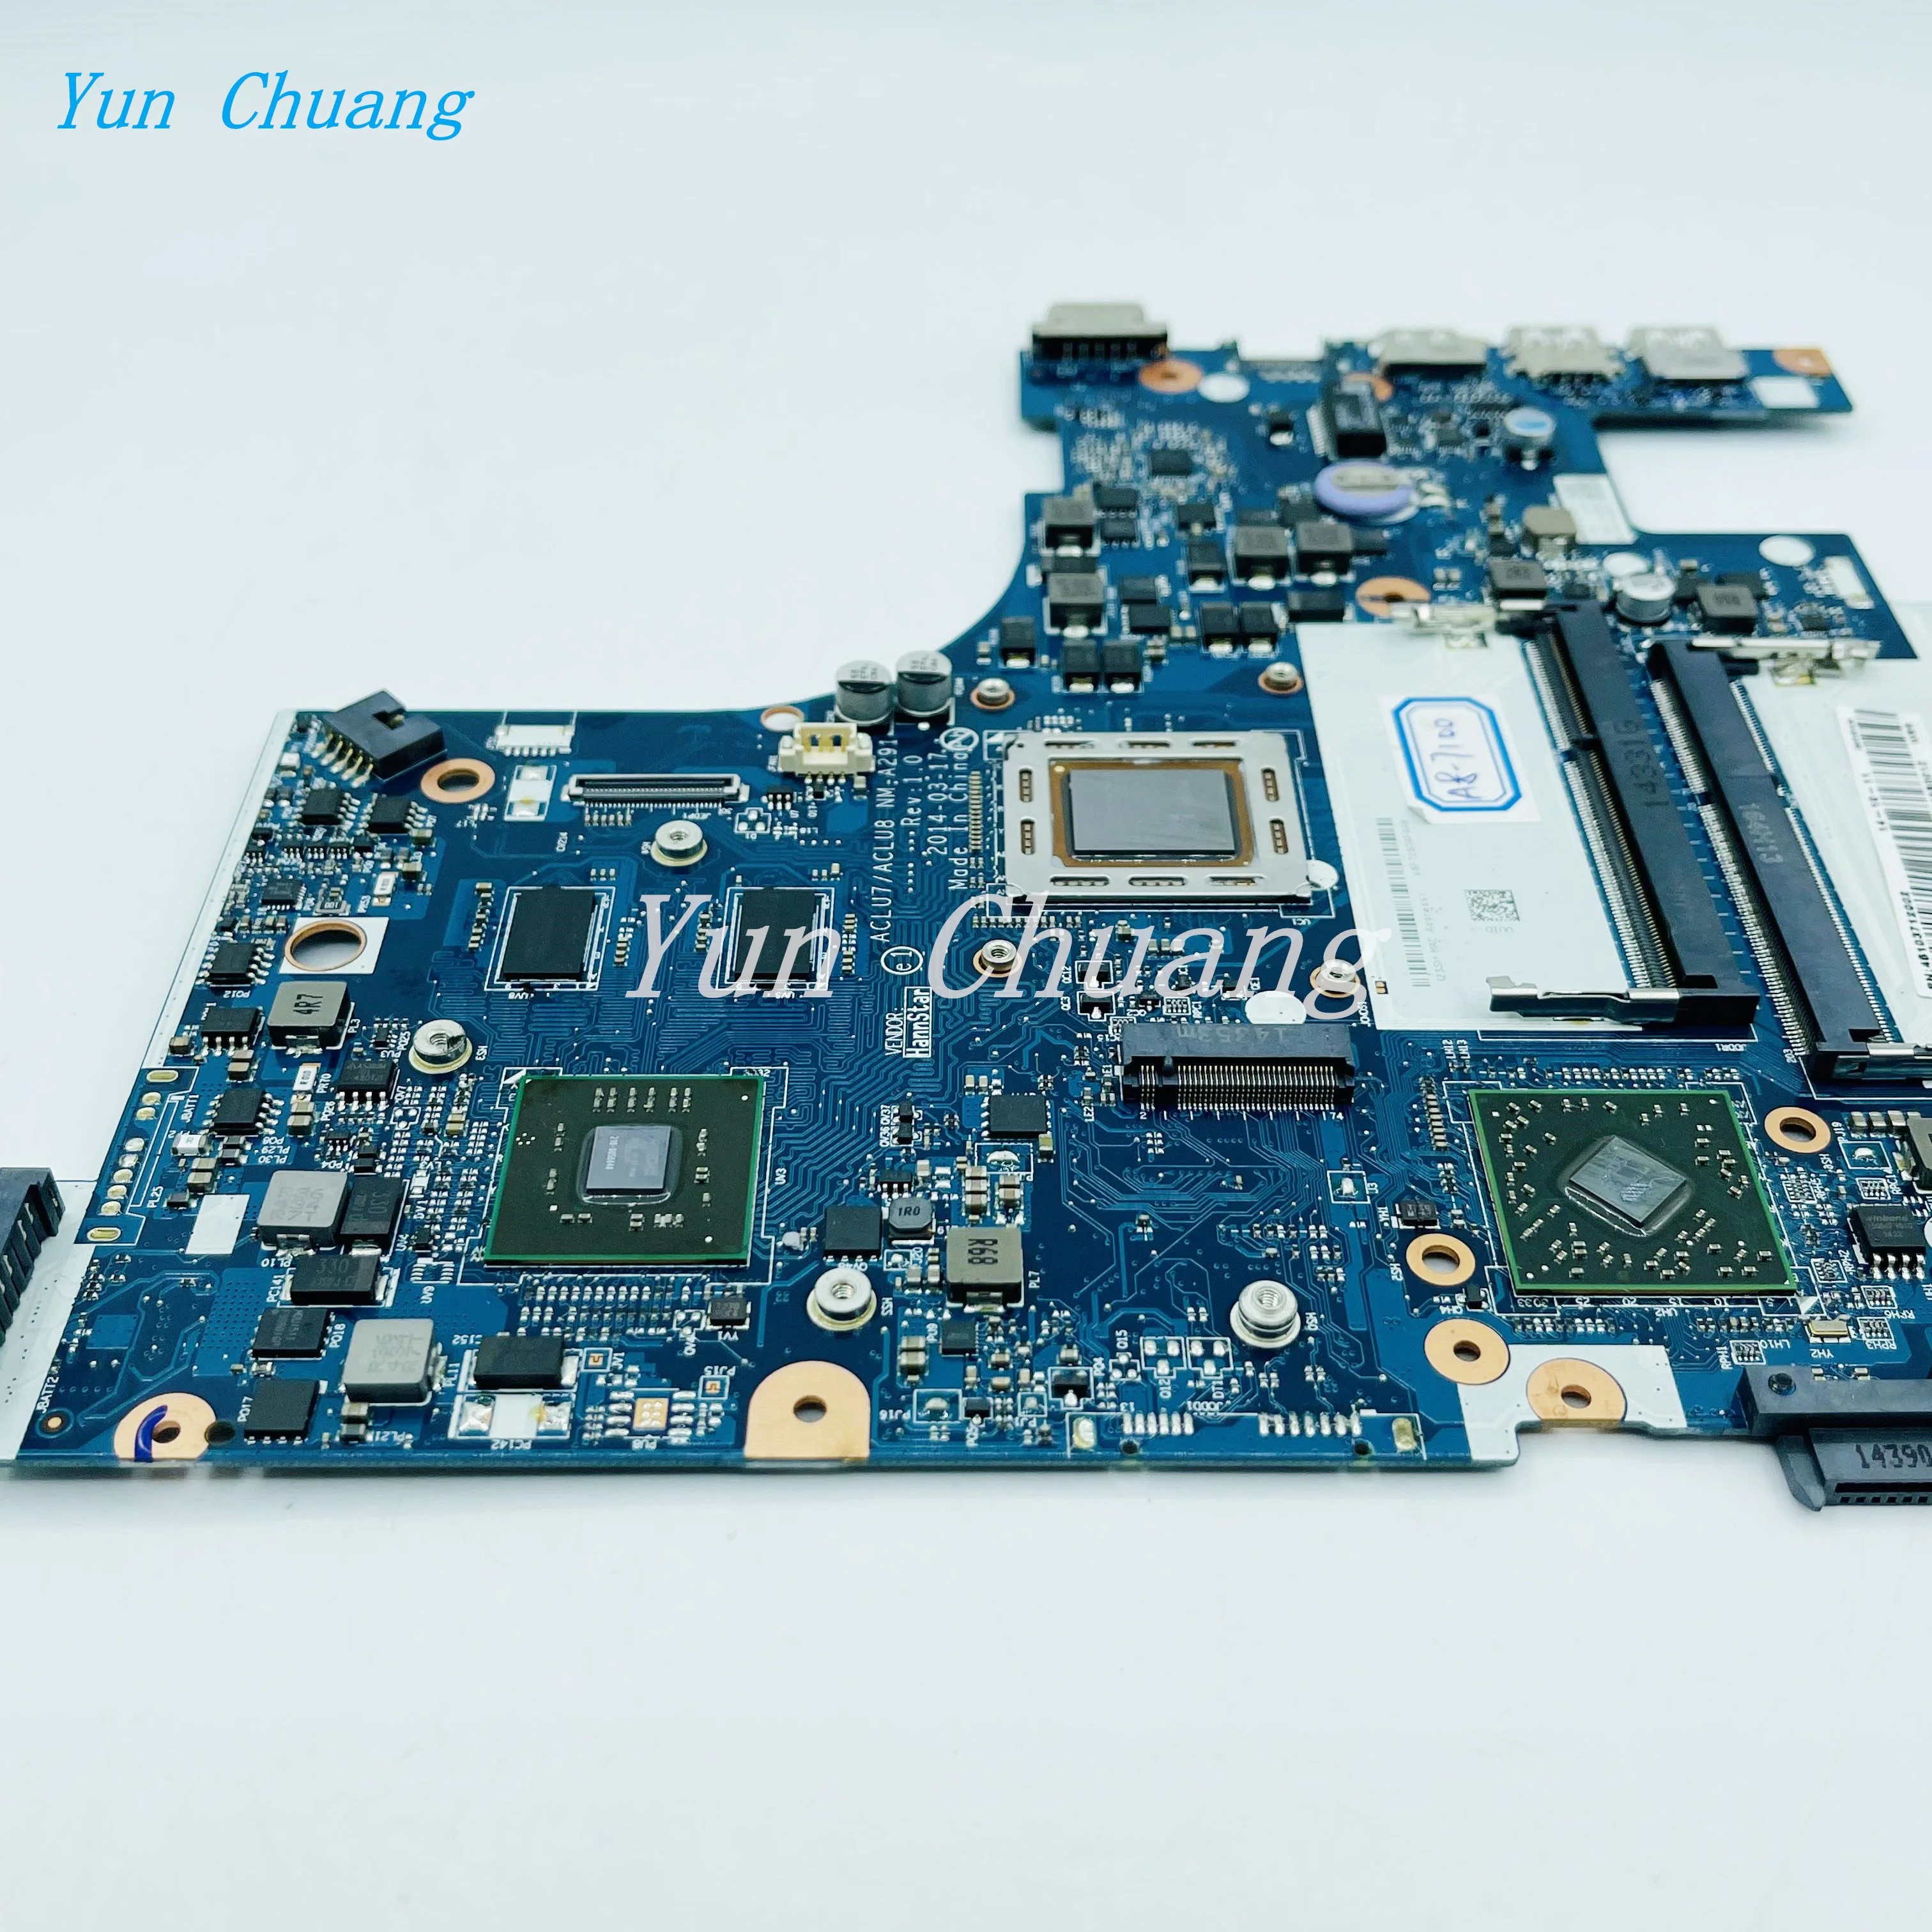 Материнская плата ACLU7/ACLU8 NM-A291 для ноутбука Lenovo Z50-75 Материнская плата FRU 5B20F66795 материнская плата С процессором A8-7100 2G-GPU DDR3L